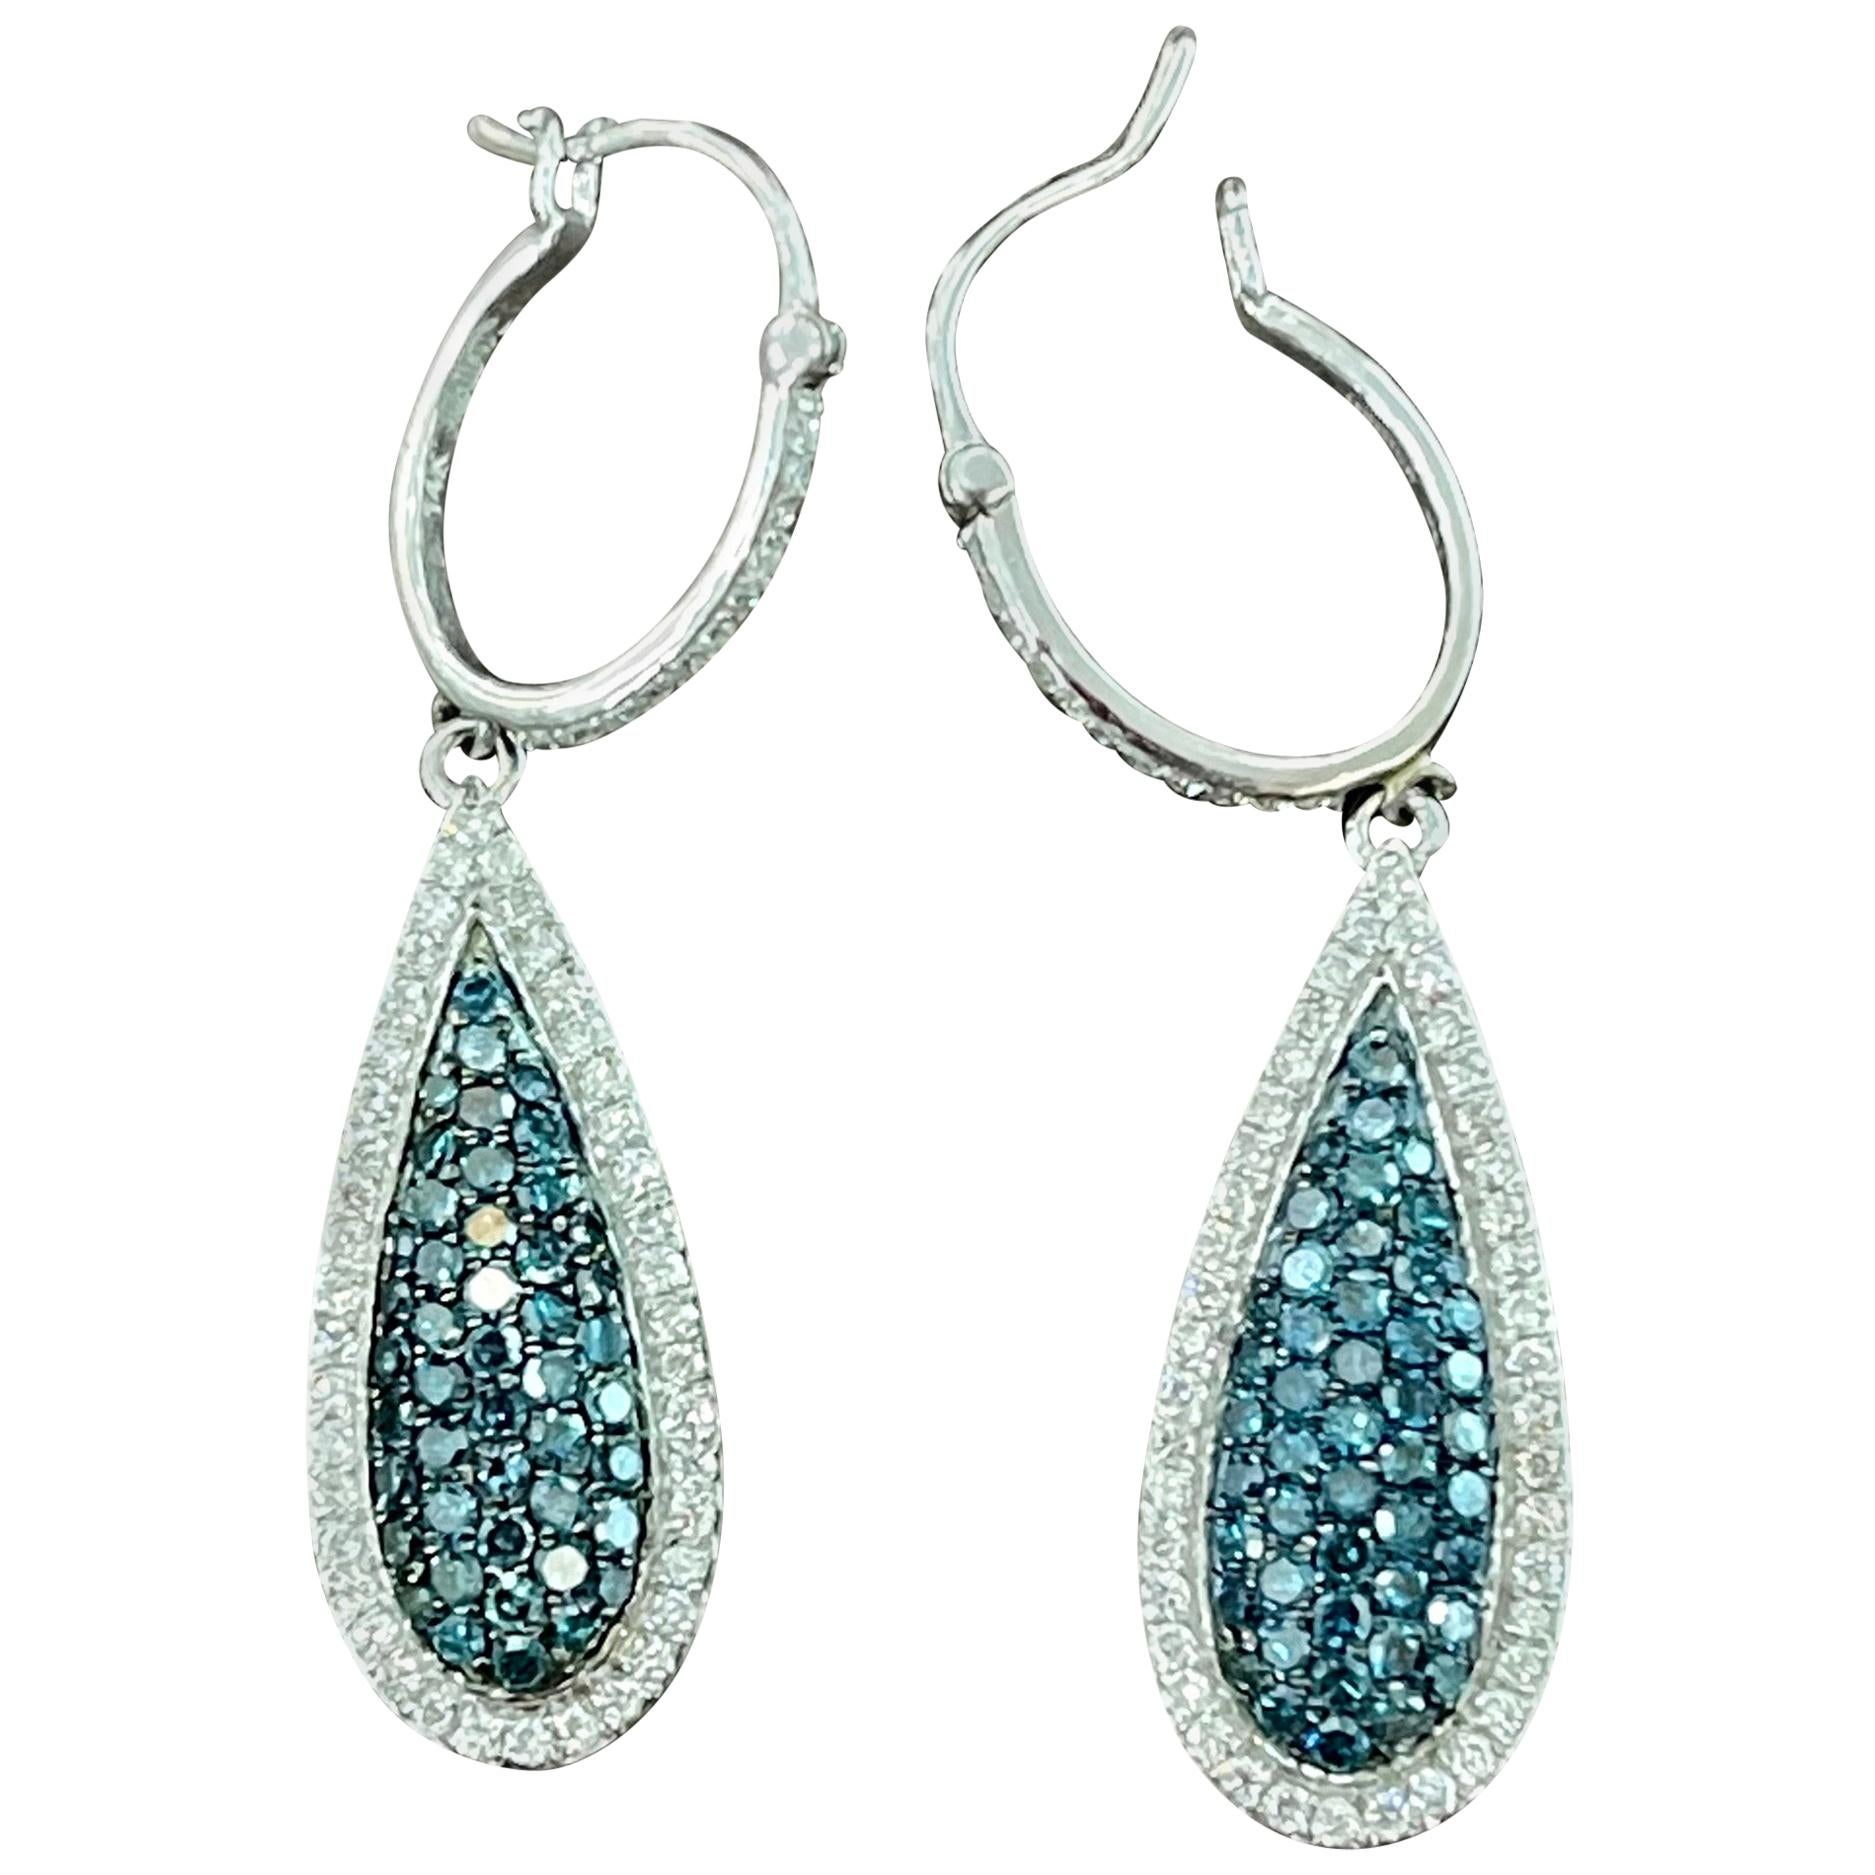 Designer Effy's 1.64 Carat Blue & White Diamond Dangling Earrings 14 Karat Gold